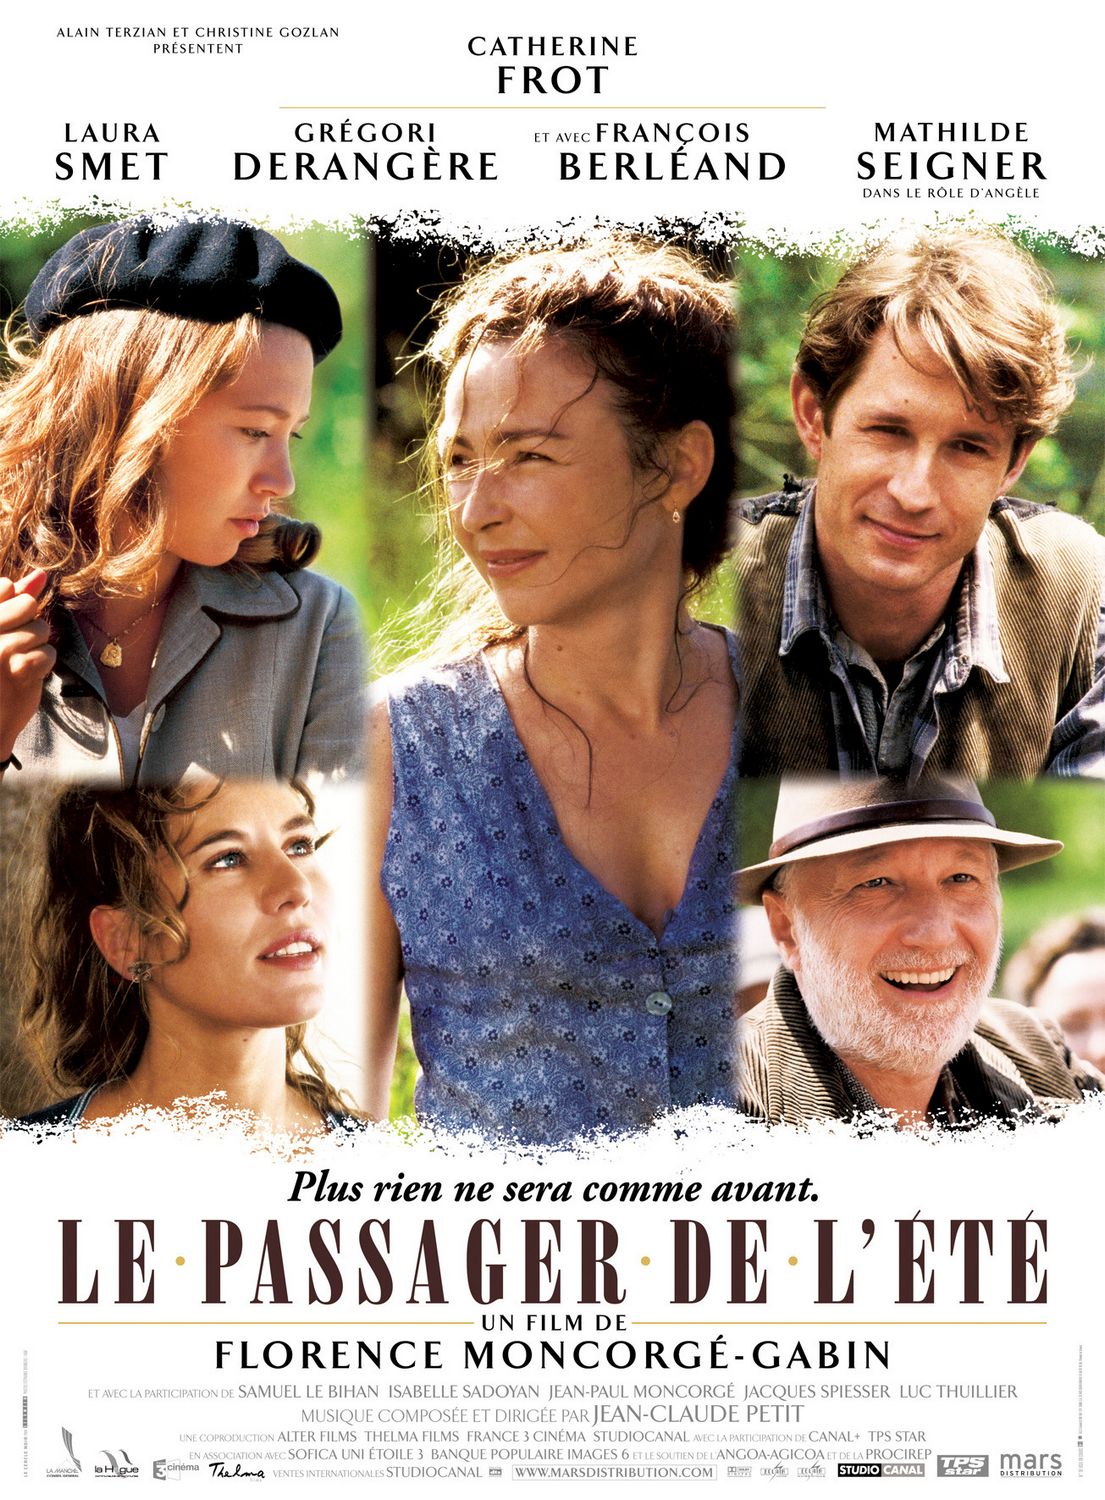 Extra Large Movie Poster Image for Passager de l'été, Le 